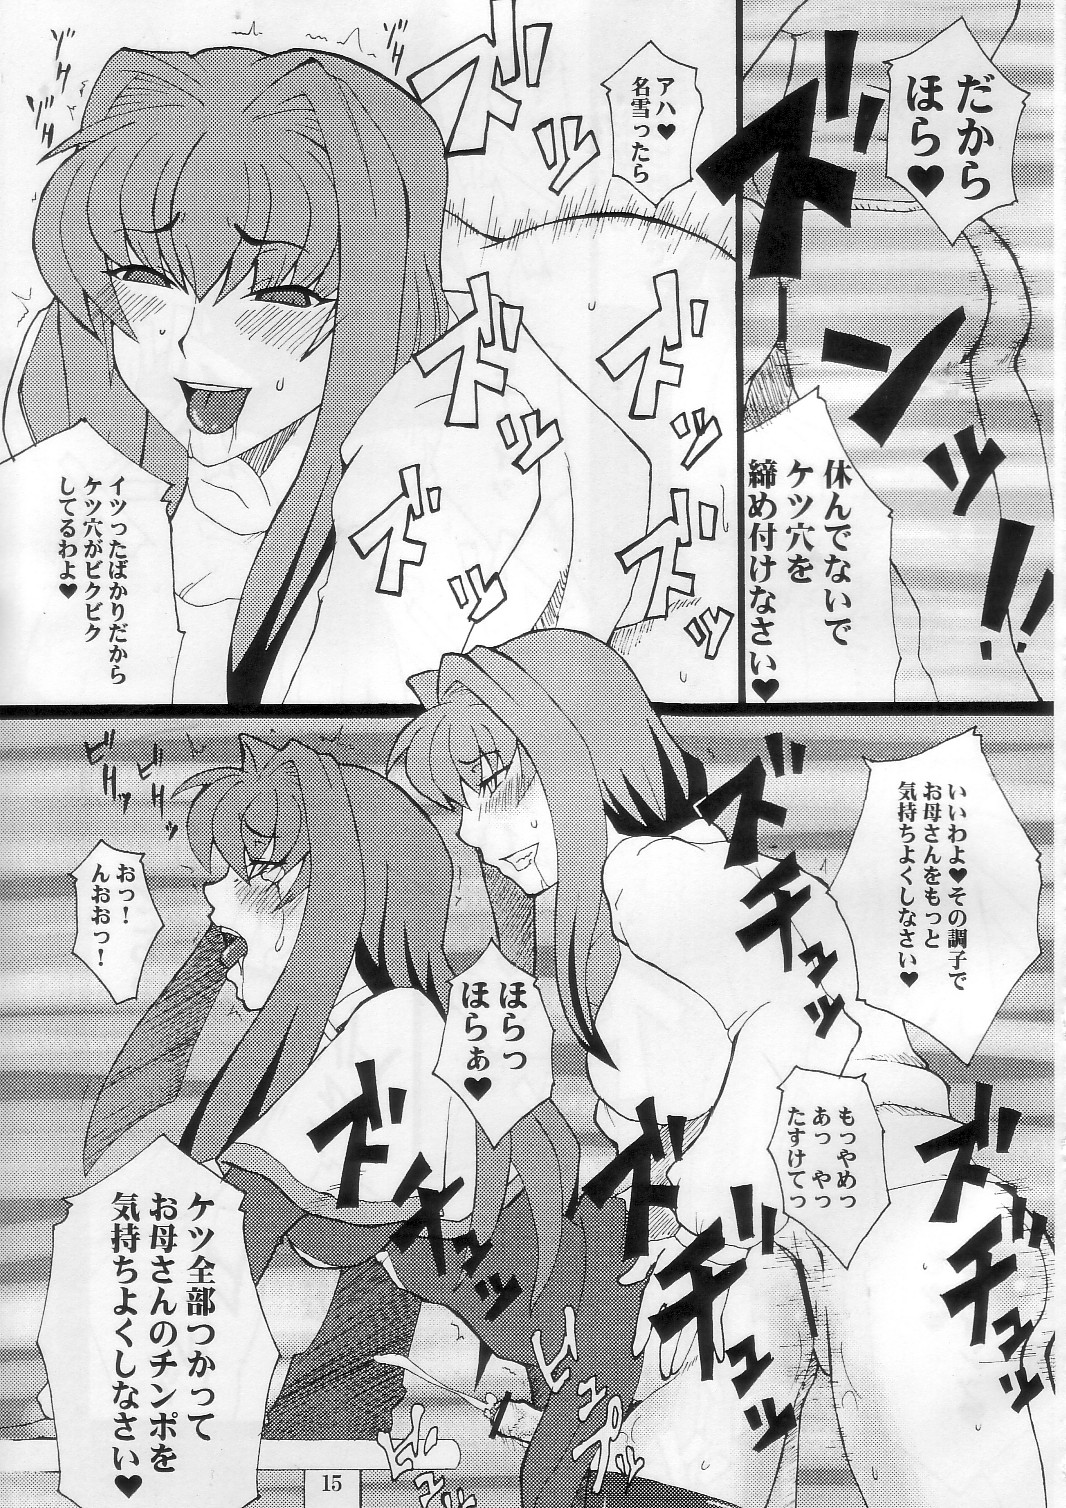 [Hanjuku Yude Tamago] Kyouki vol.5 (Kanon) page 15 full